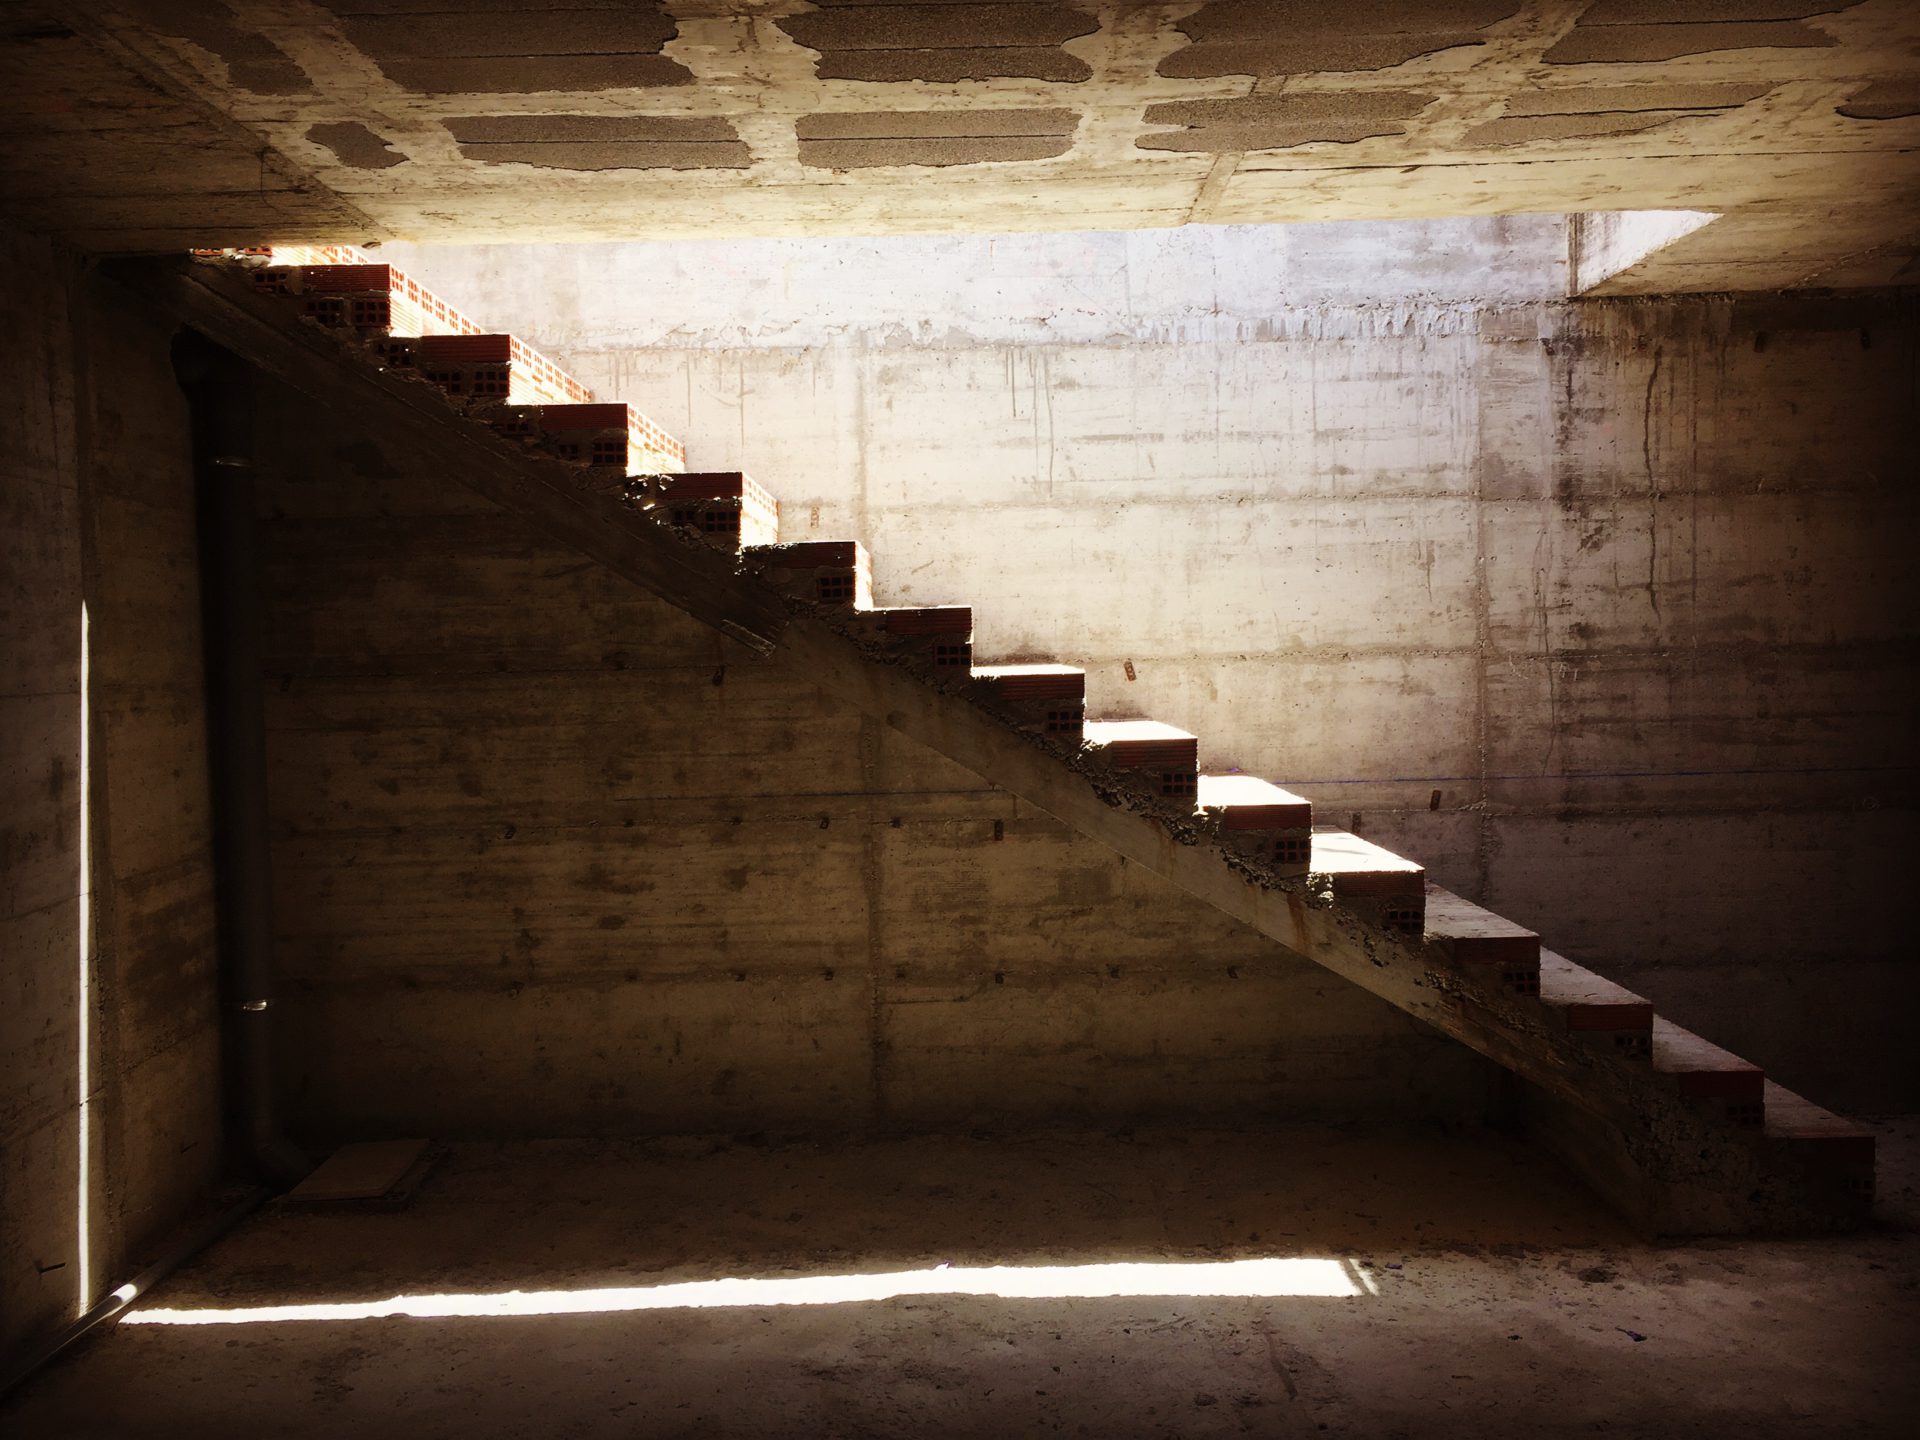 Arquitectura de escaleras - Garaje rincon de la victoria